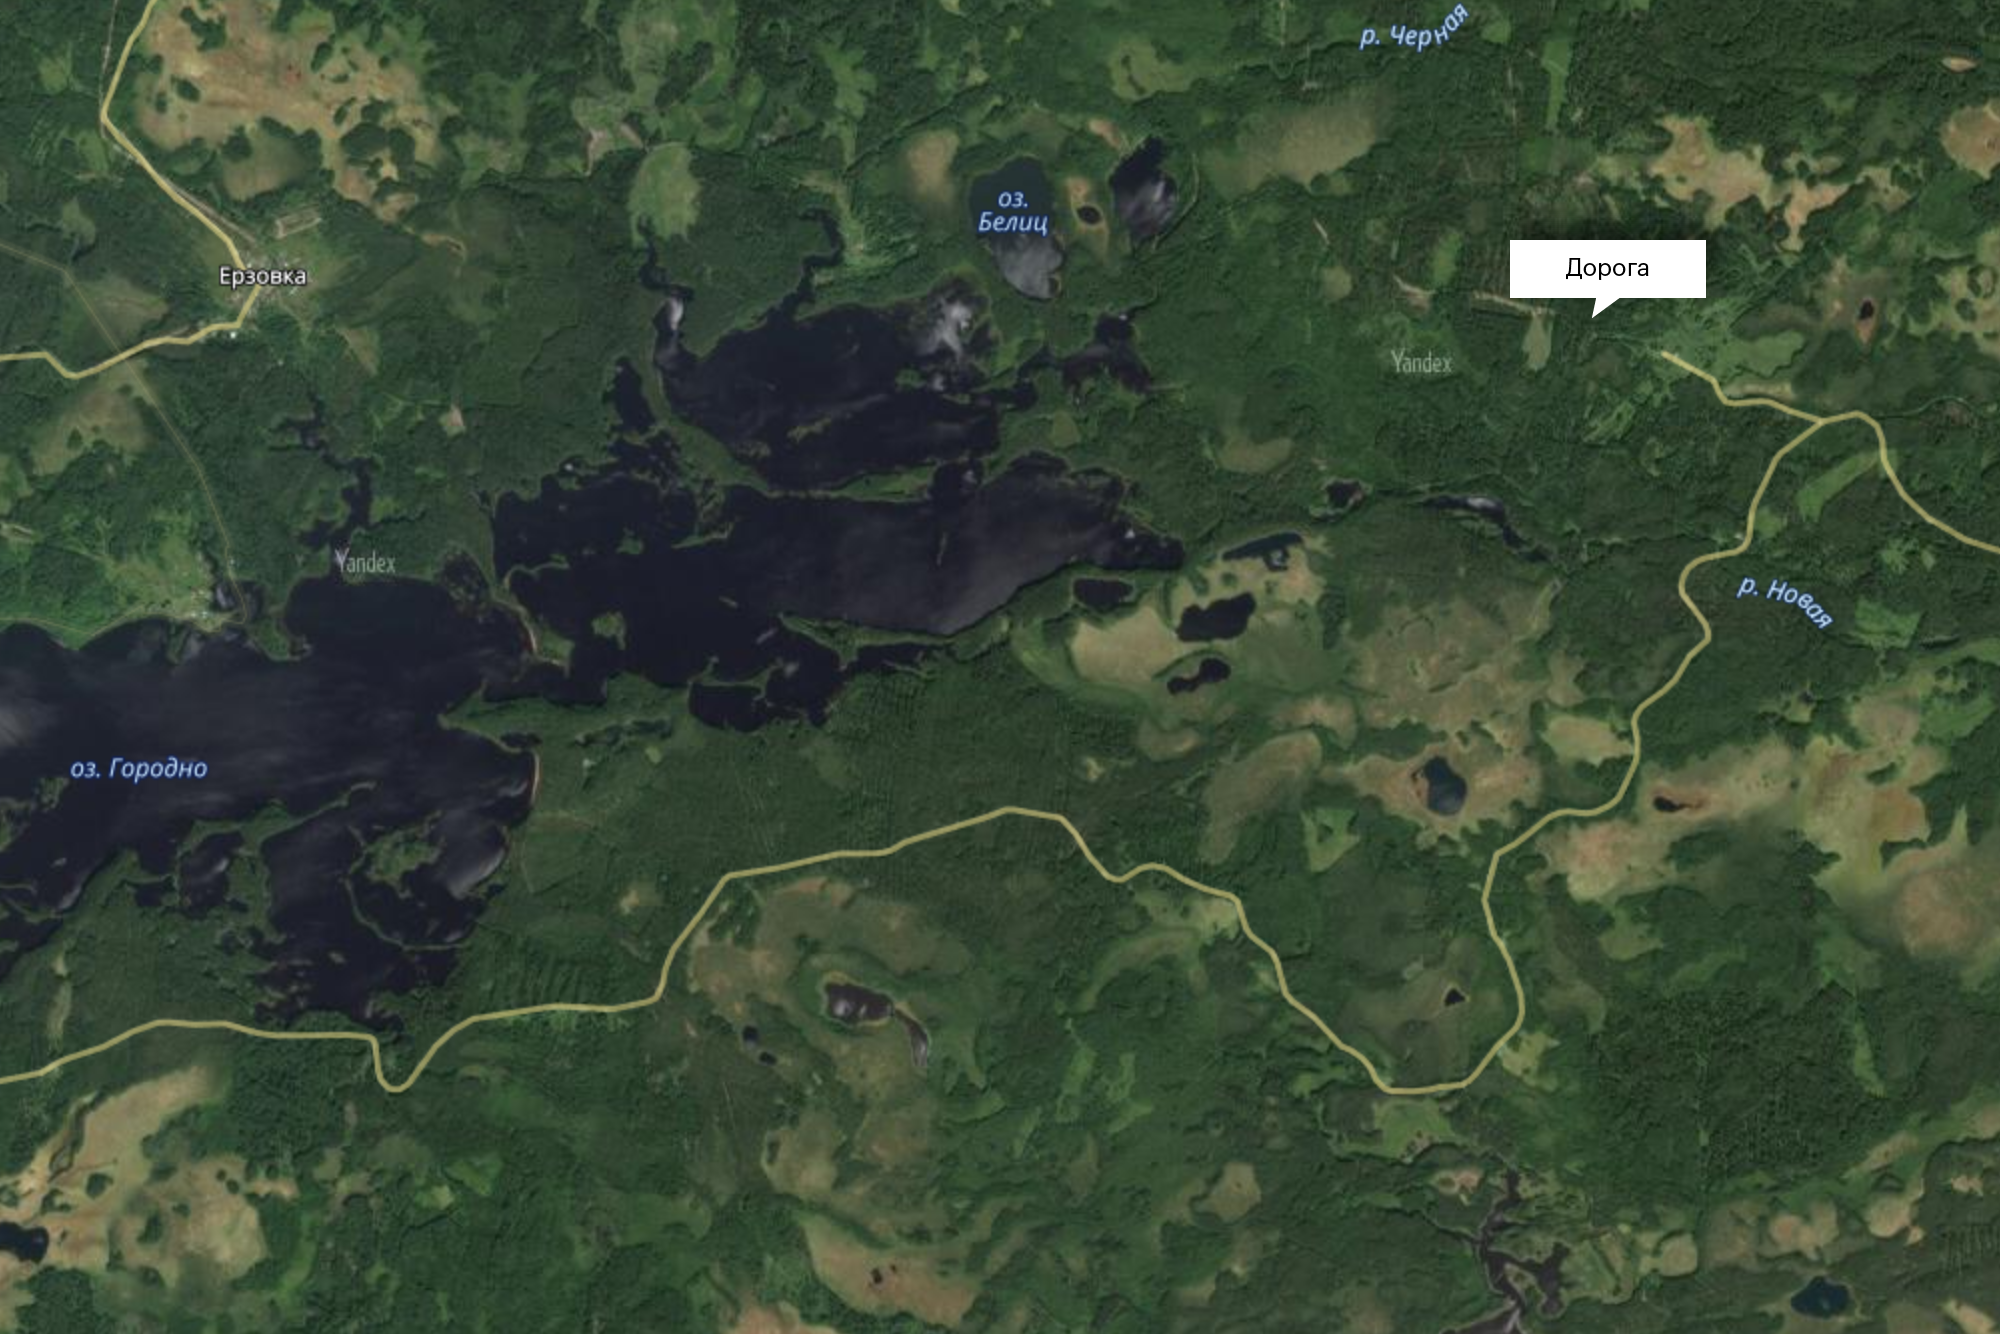 Тот же самый фрагмент карты в режиме просмотра «Гибрид»: видно, что от Сафоново к озеру Черное ведет грунтовка